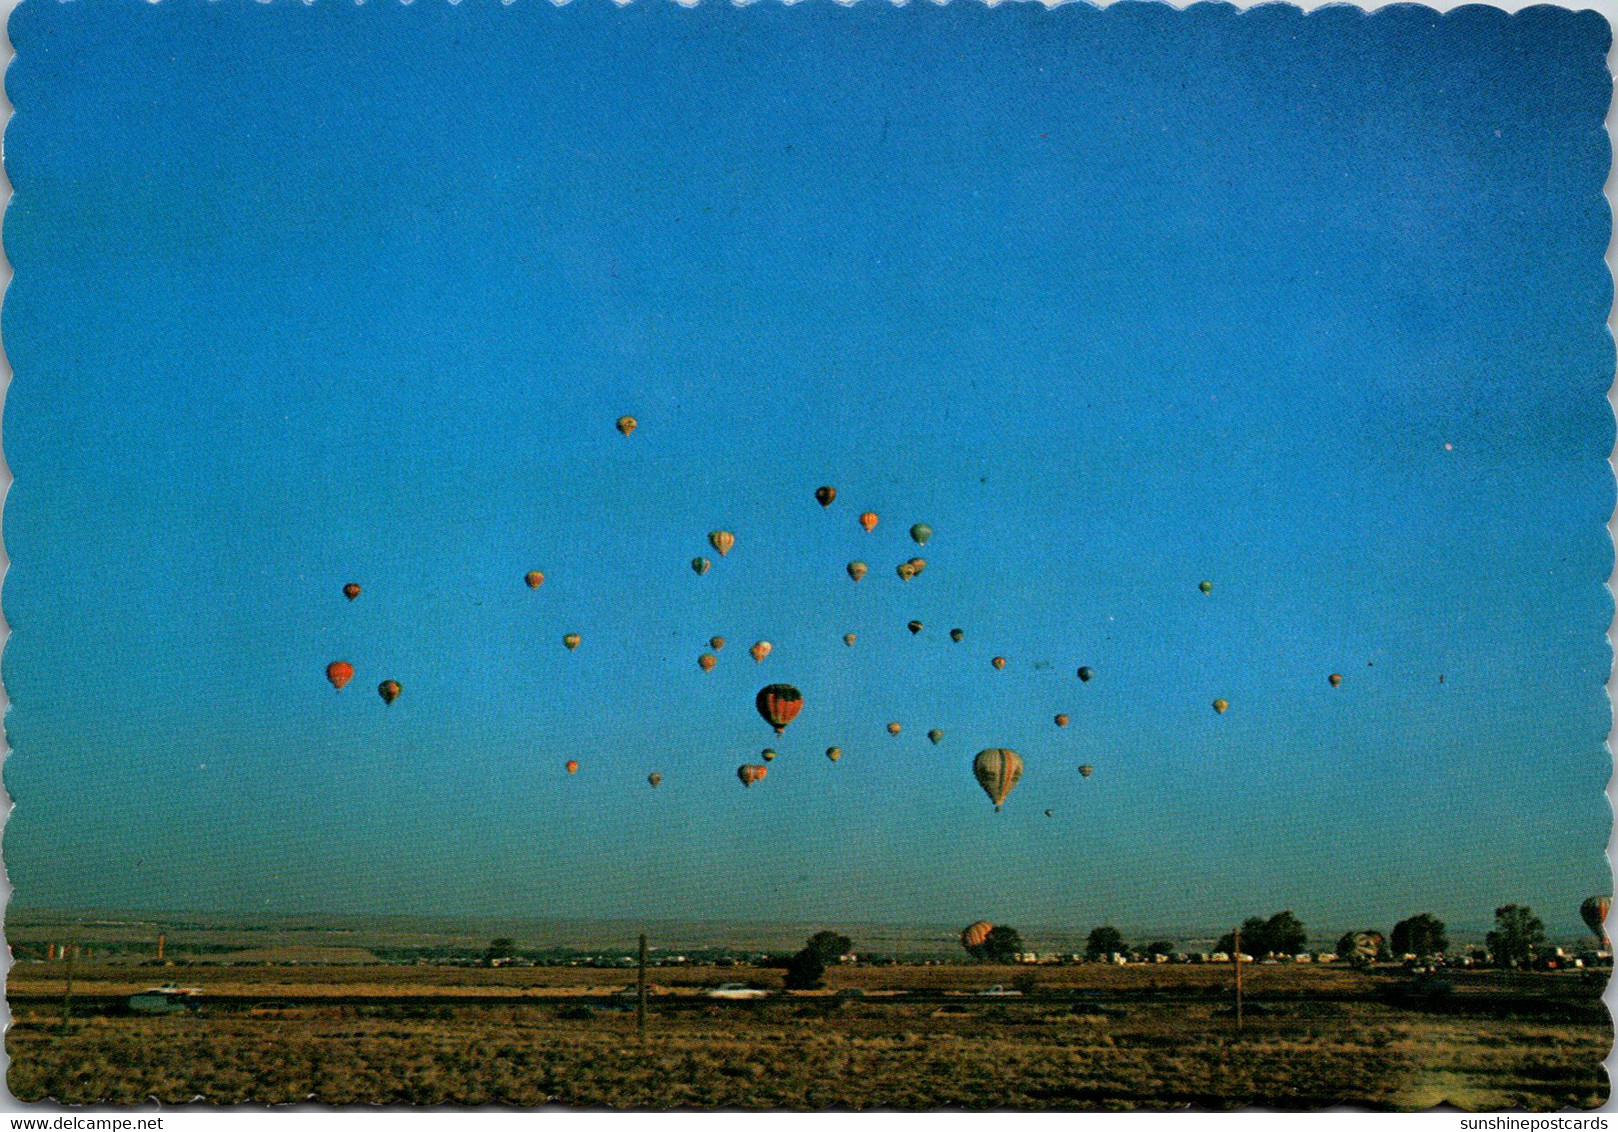 New Mexico Abuquerque Hot Air Balloon Capitol Of The World - Albuquerque